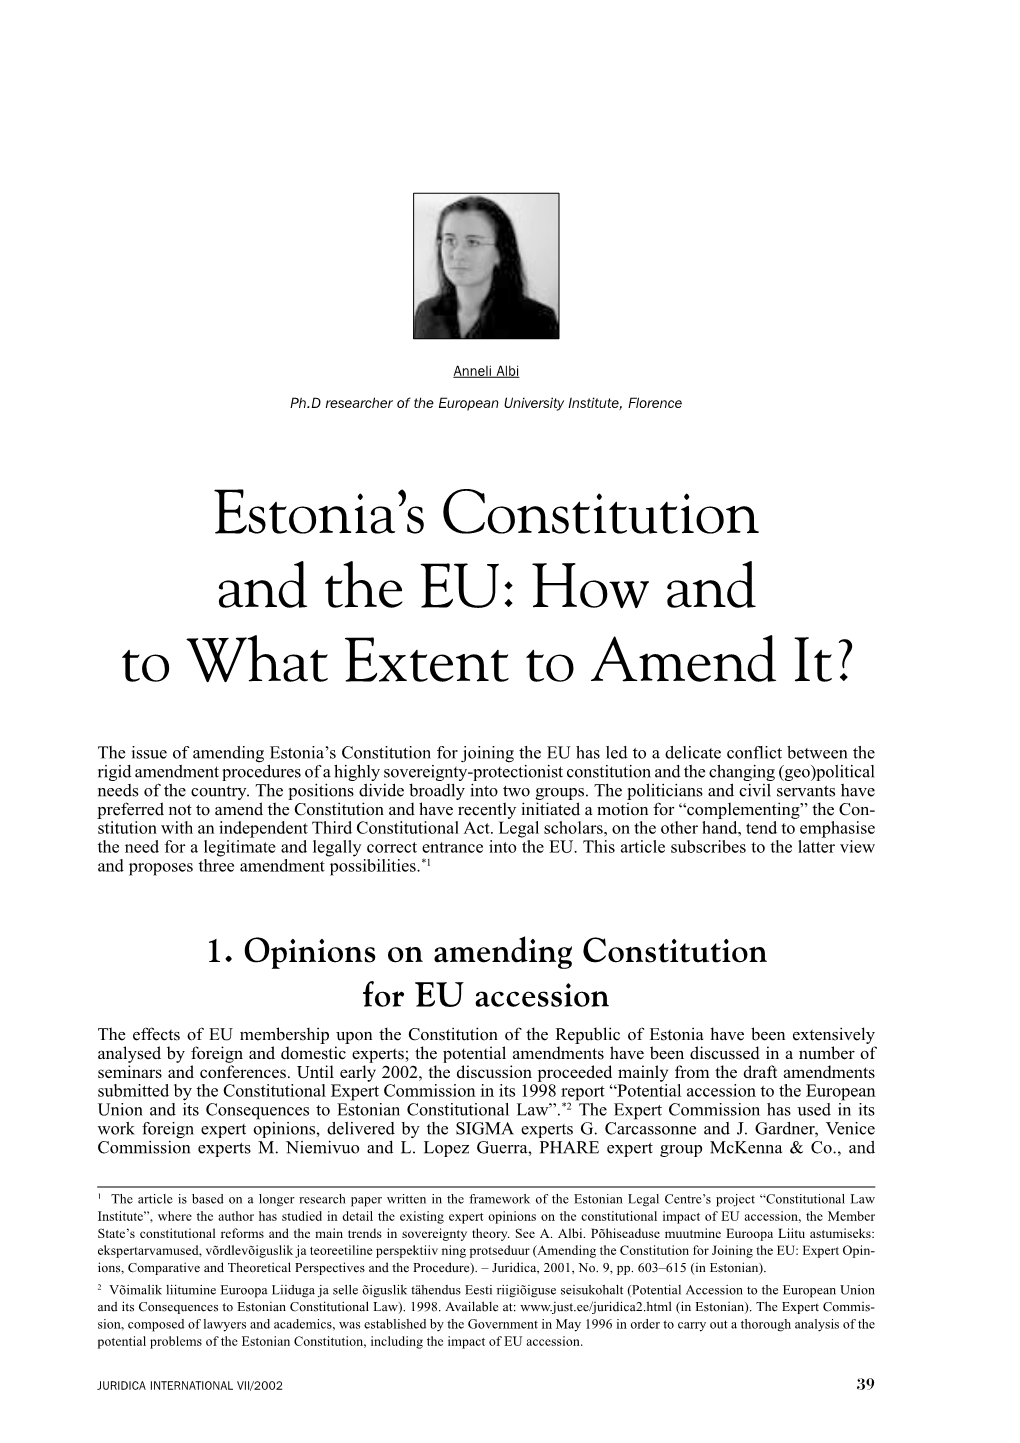 Estonia's Constitution and the EU